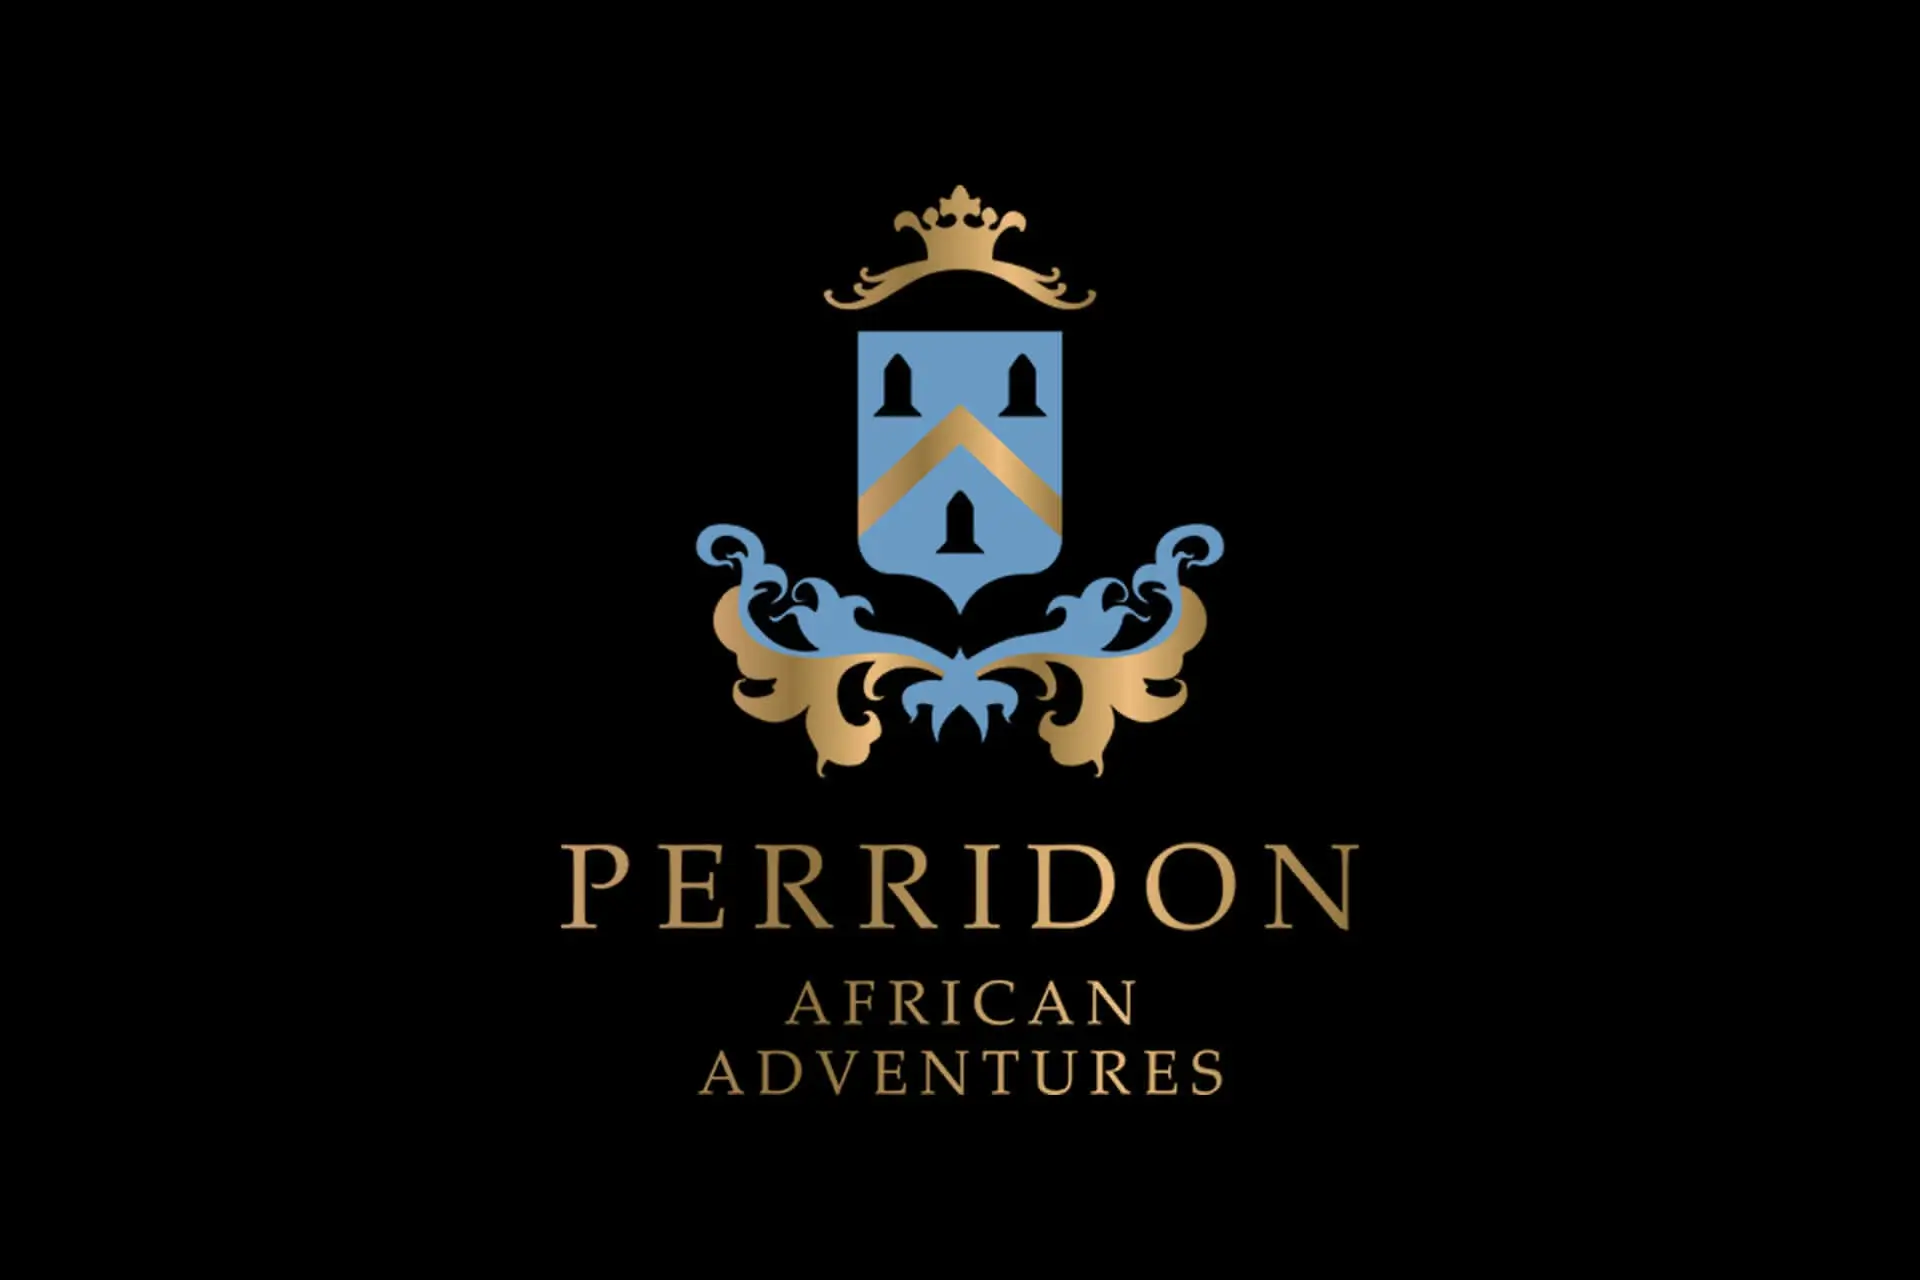 Perridon African Adventures